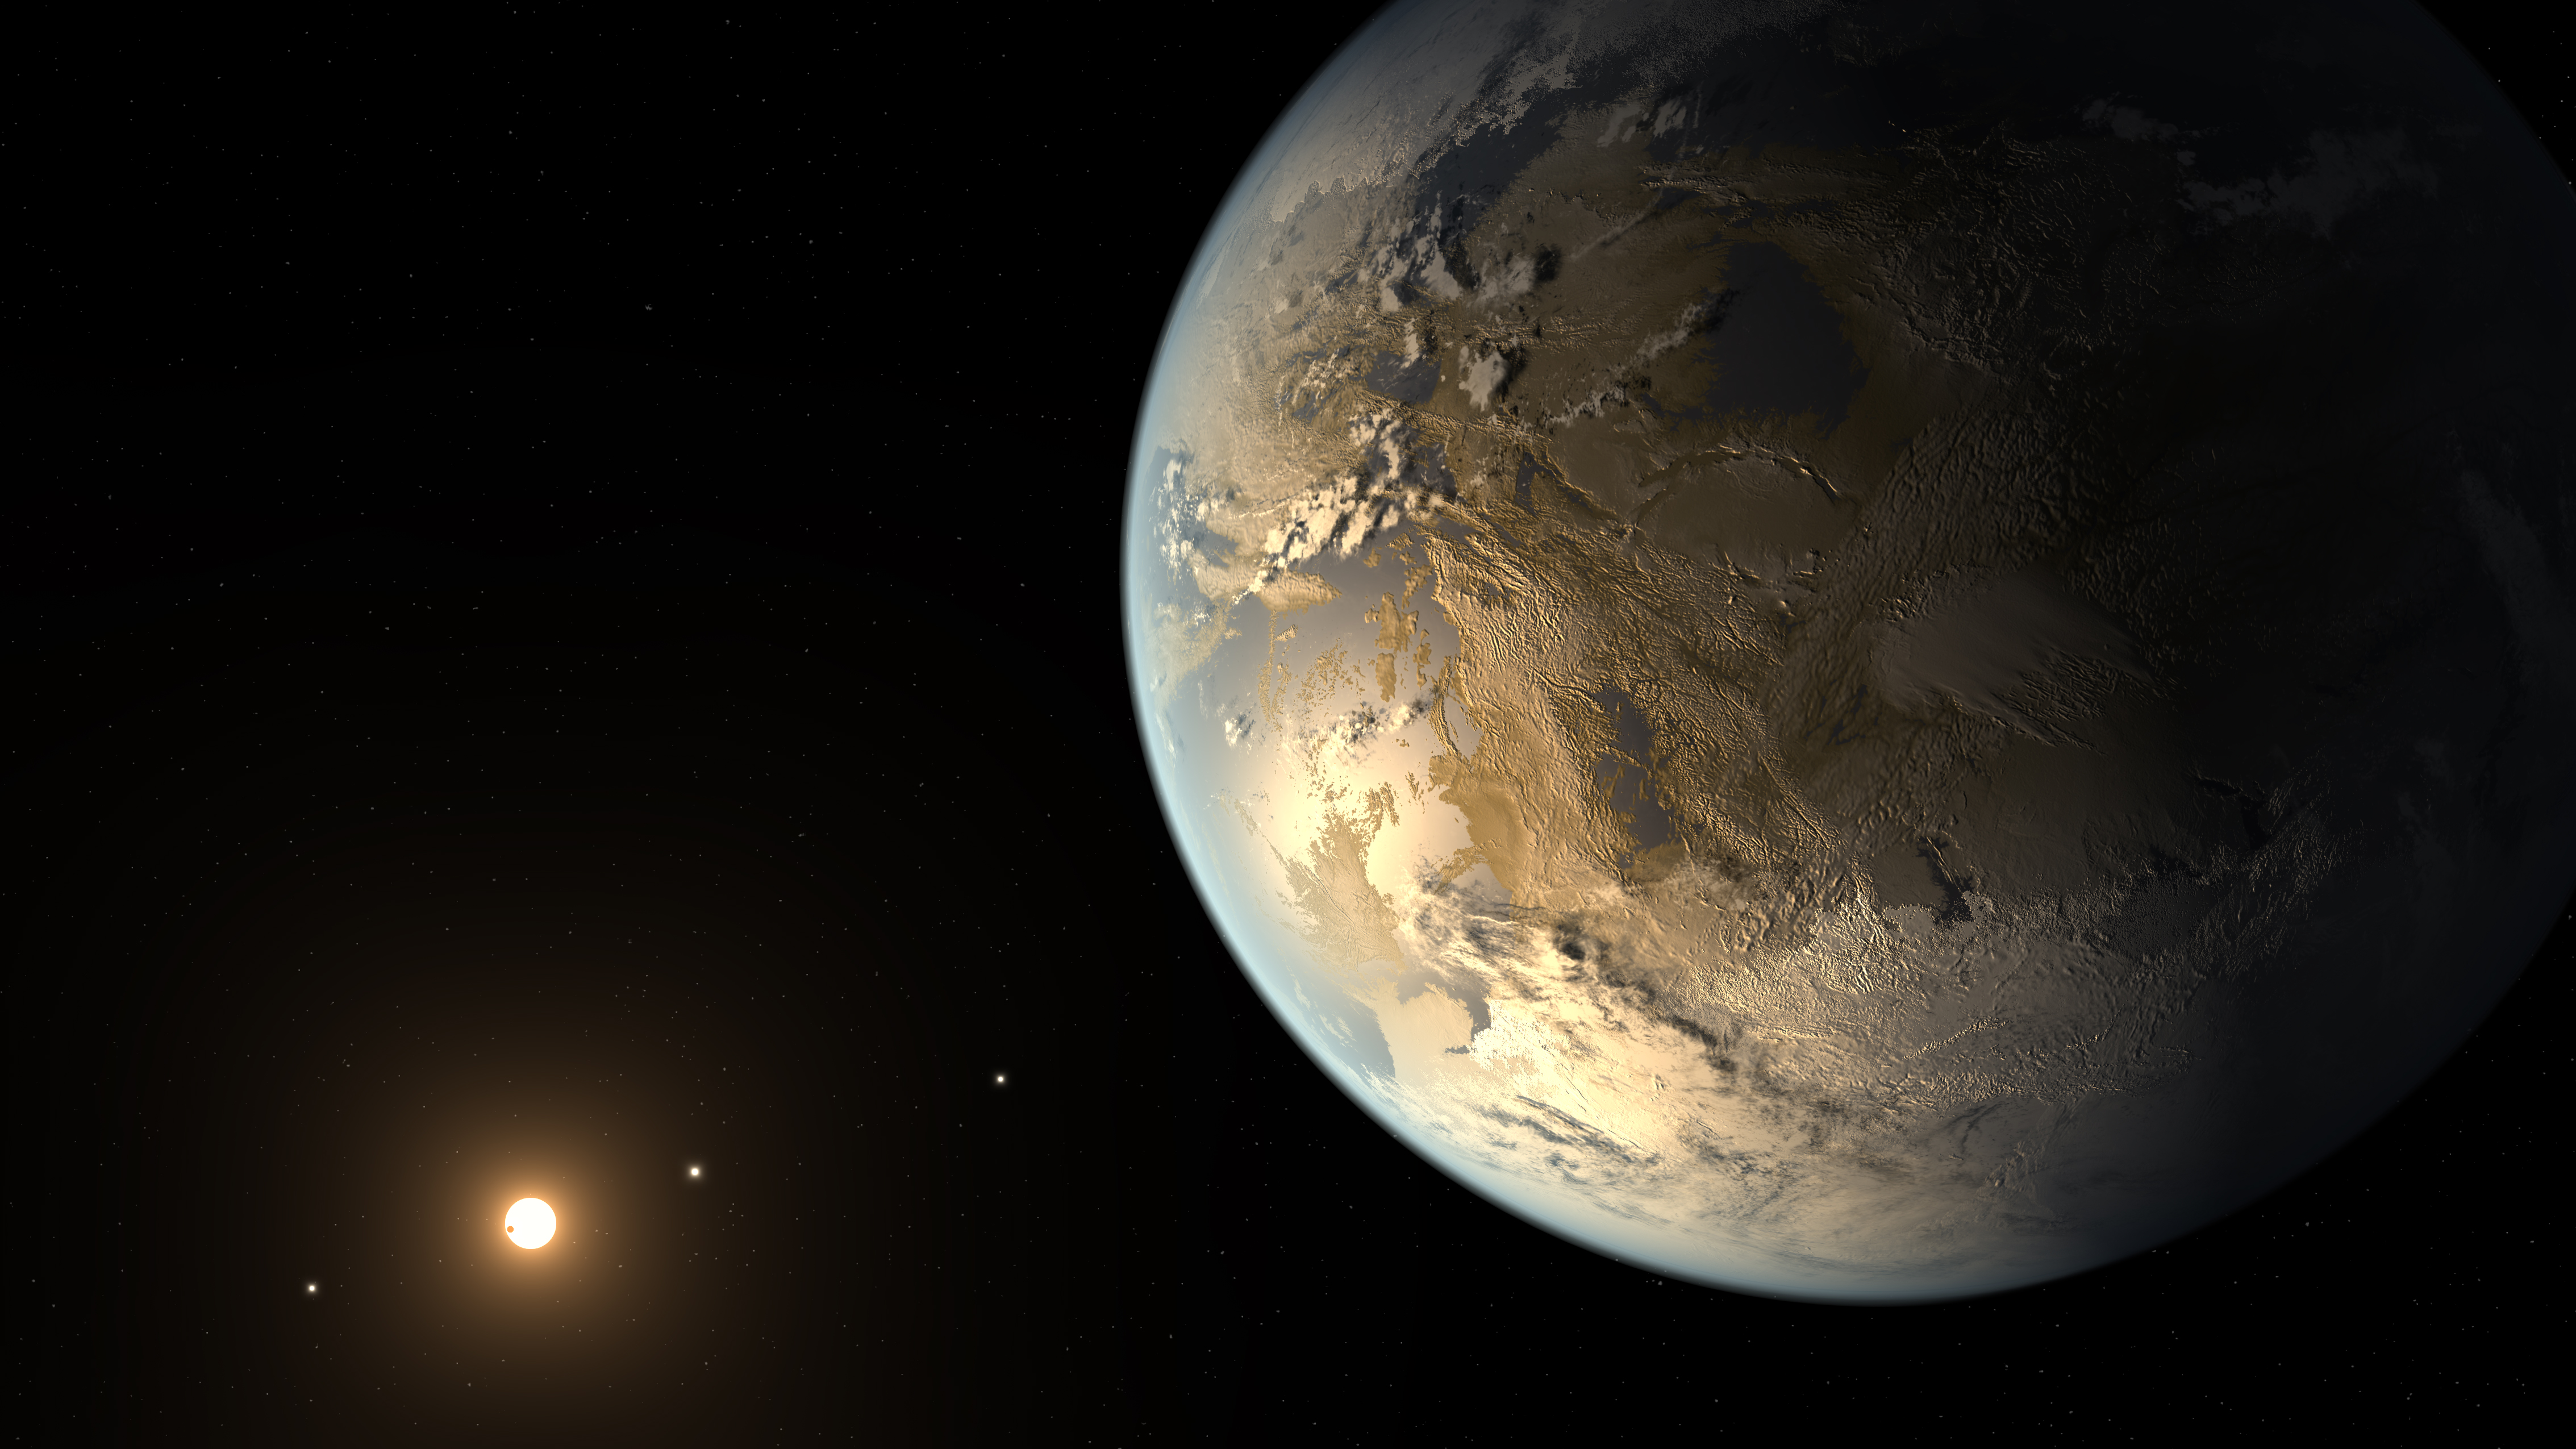 De la taille de la Terre, Kepler-186f gravite dans la zone habitable de son soleil. © Nasa Ames, JPL-Caltech, T. Pyle